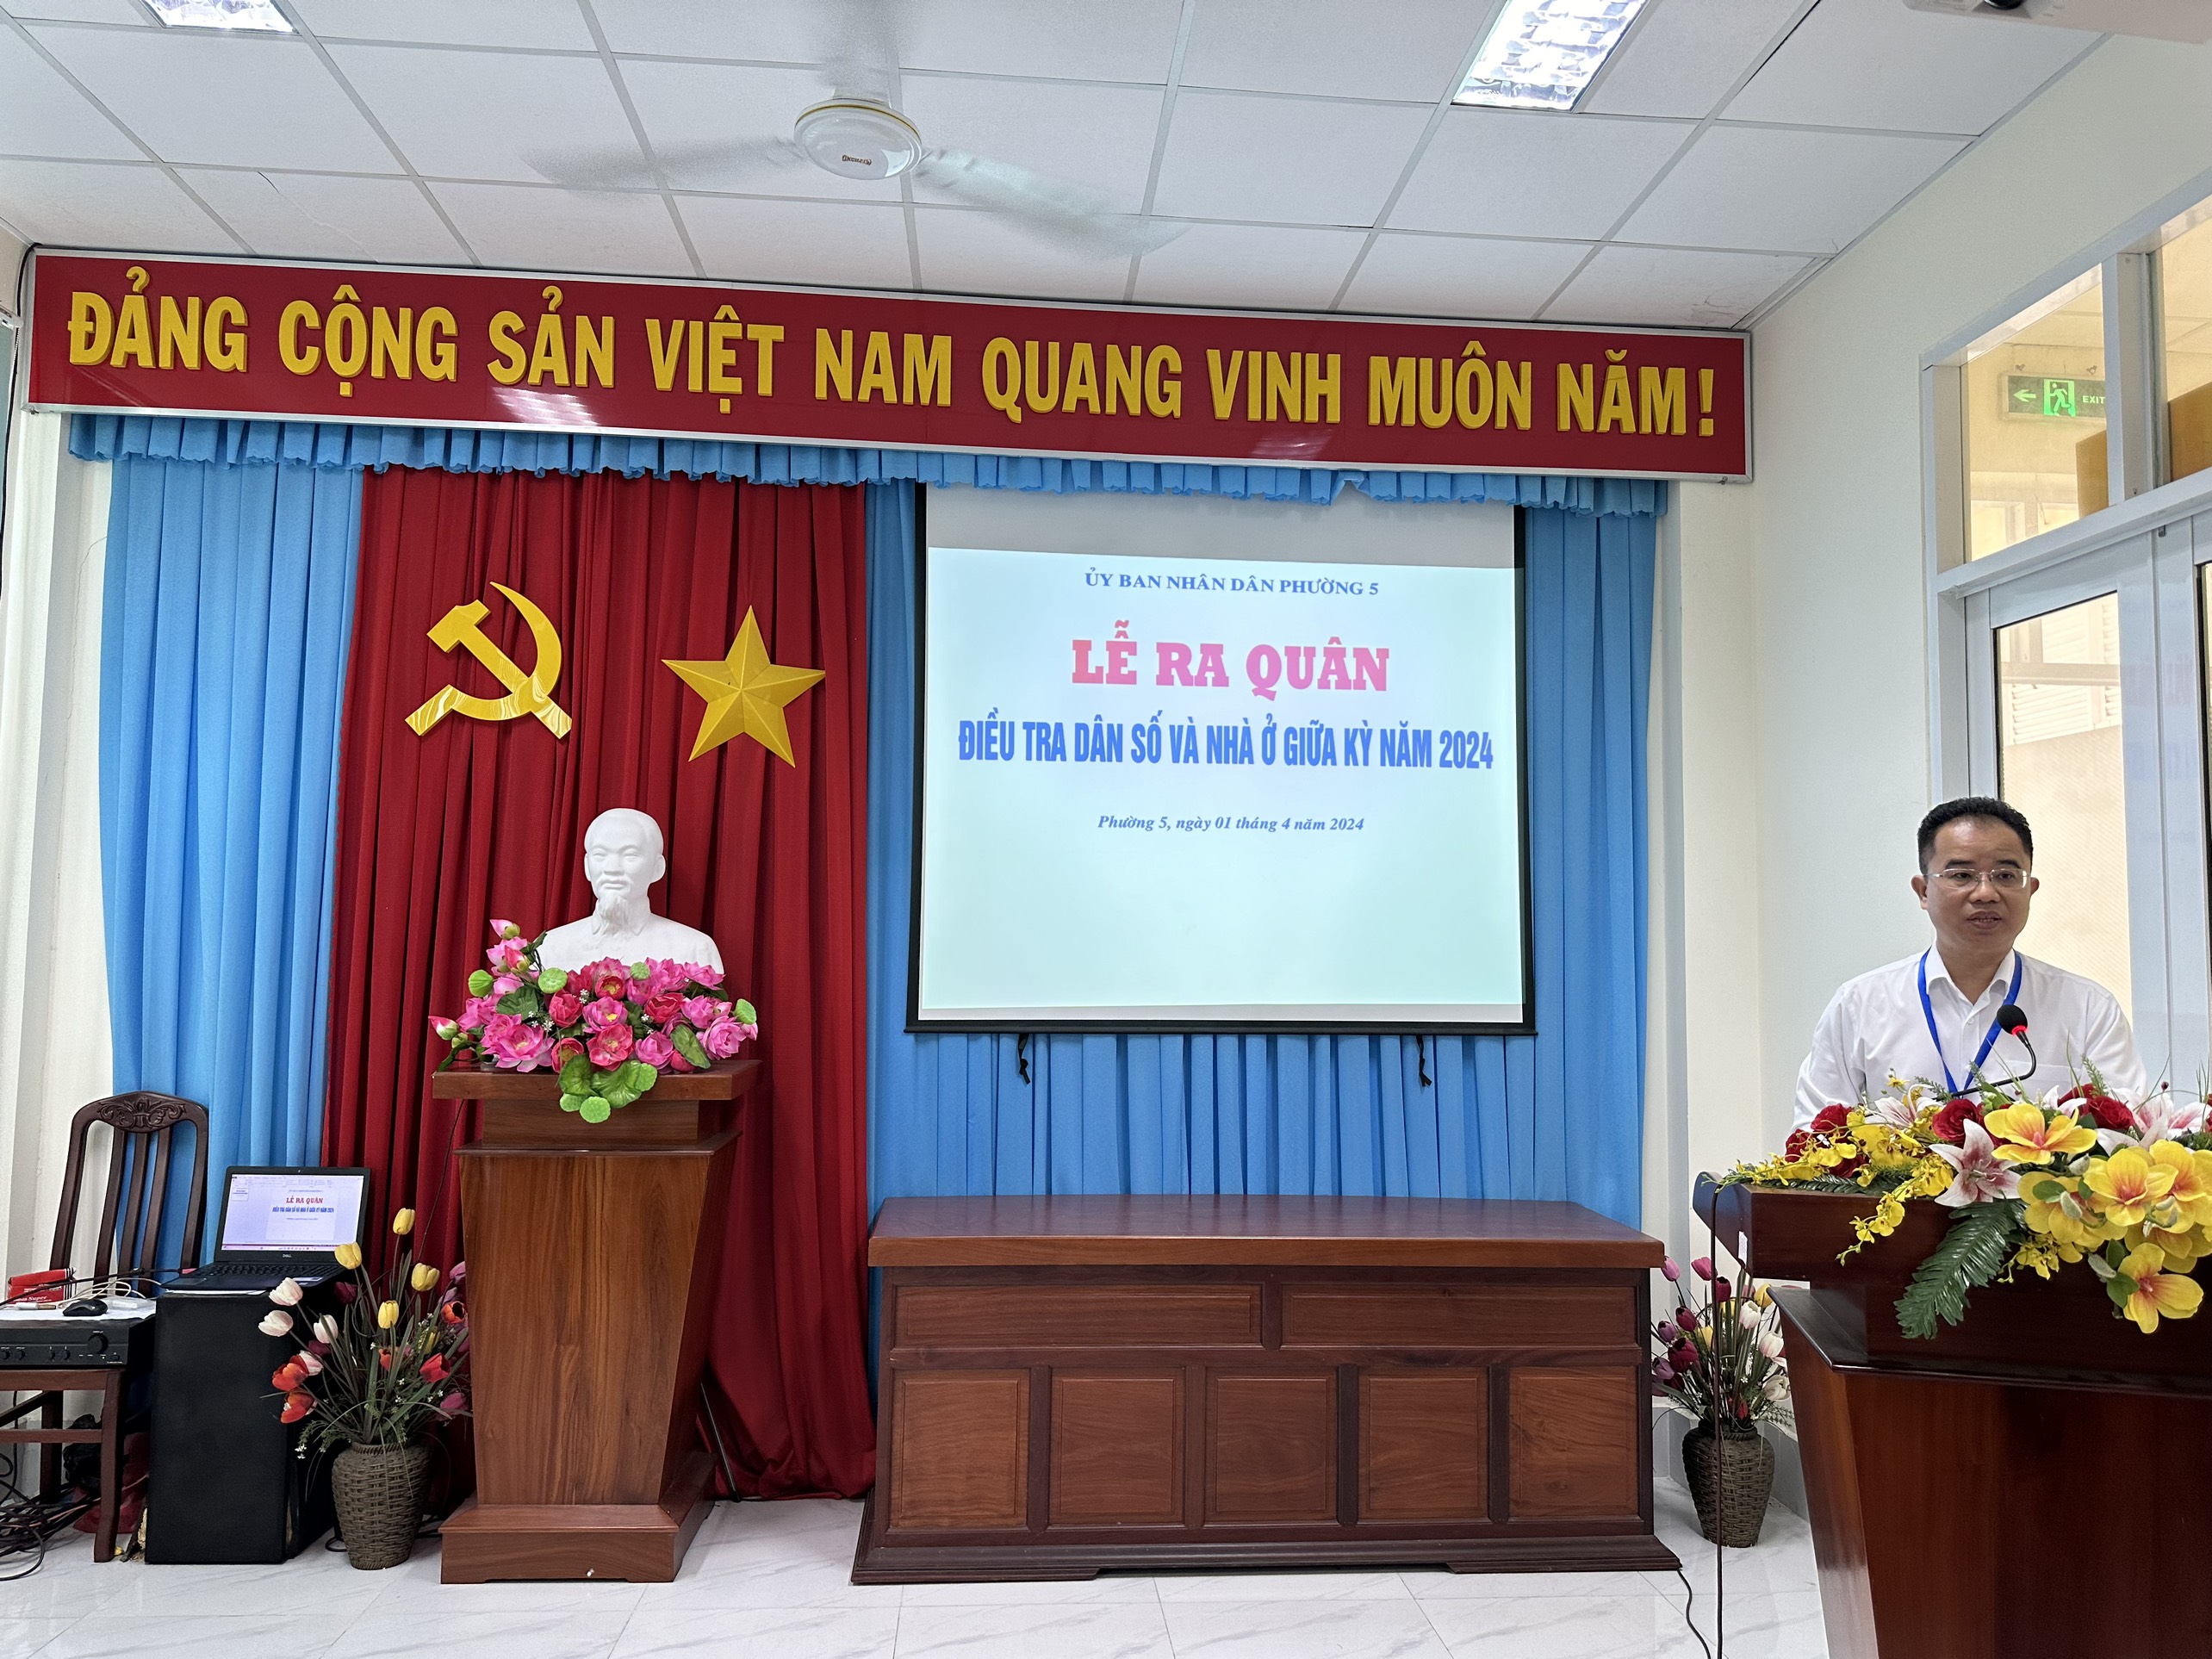 Tiền Giang tổ chức Lễ ra quân Điều tra dân số và nhà ở giữa kỳ năm 2024